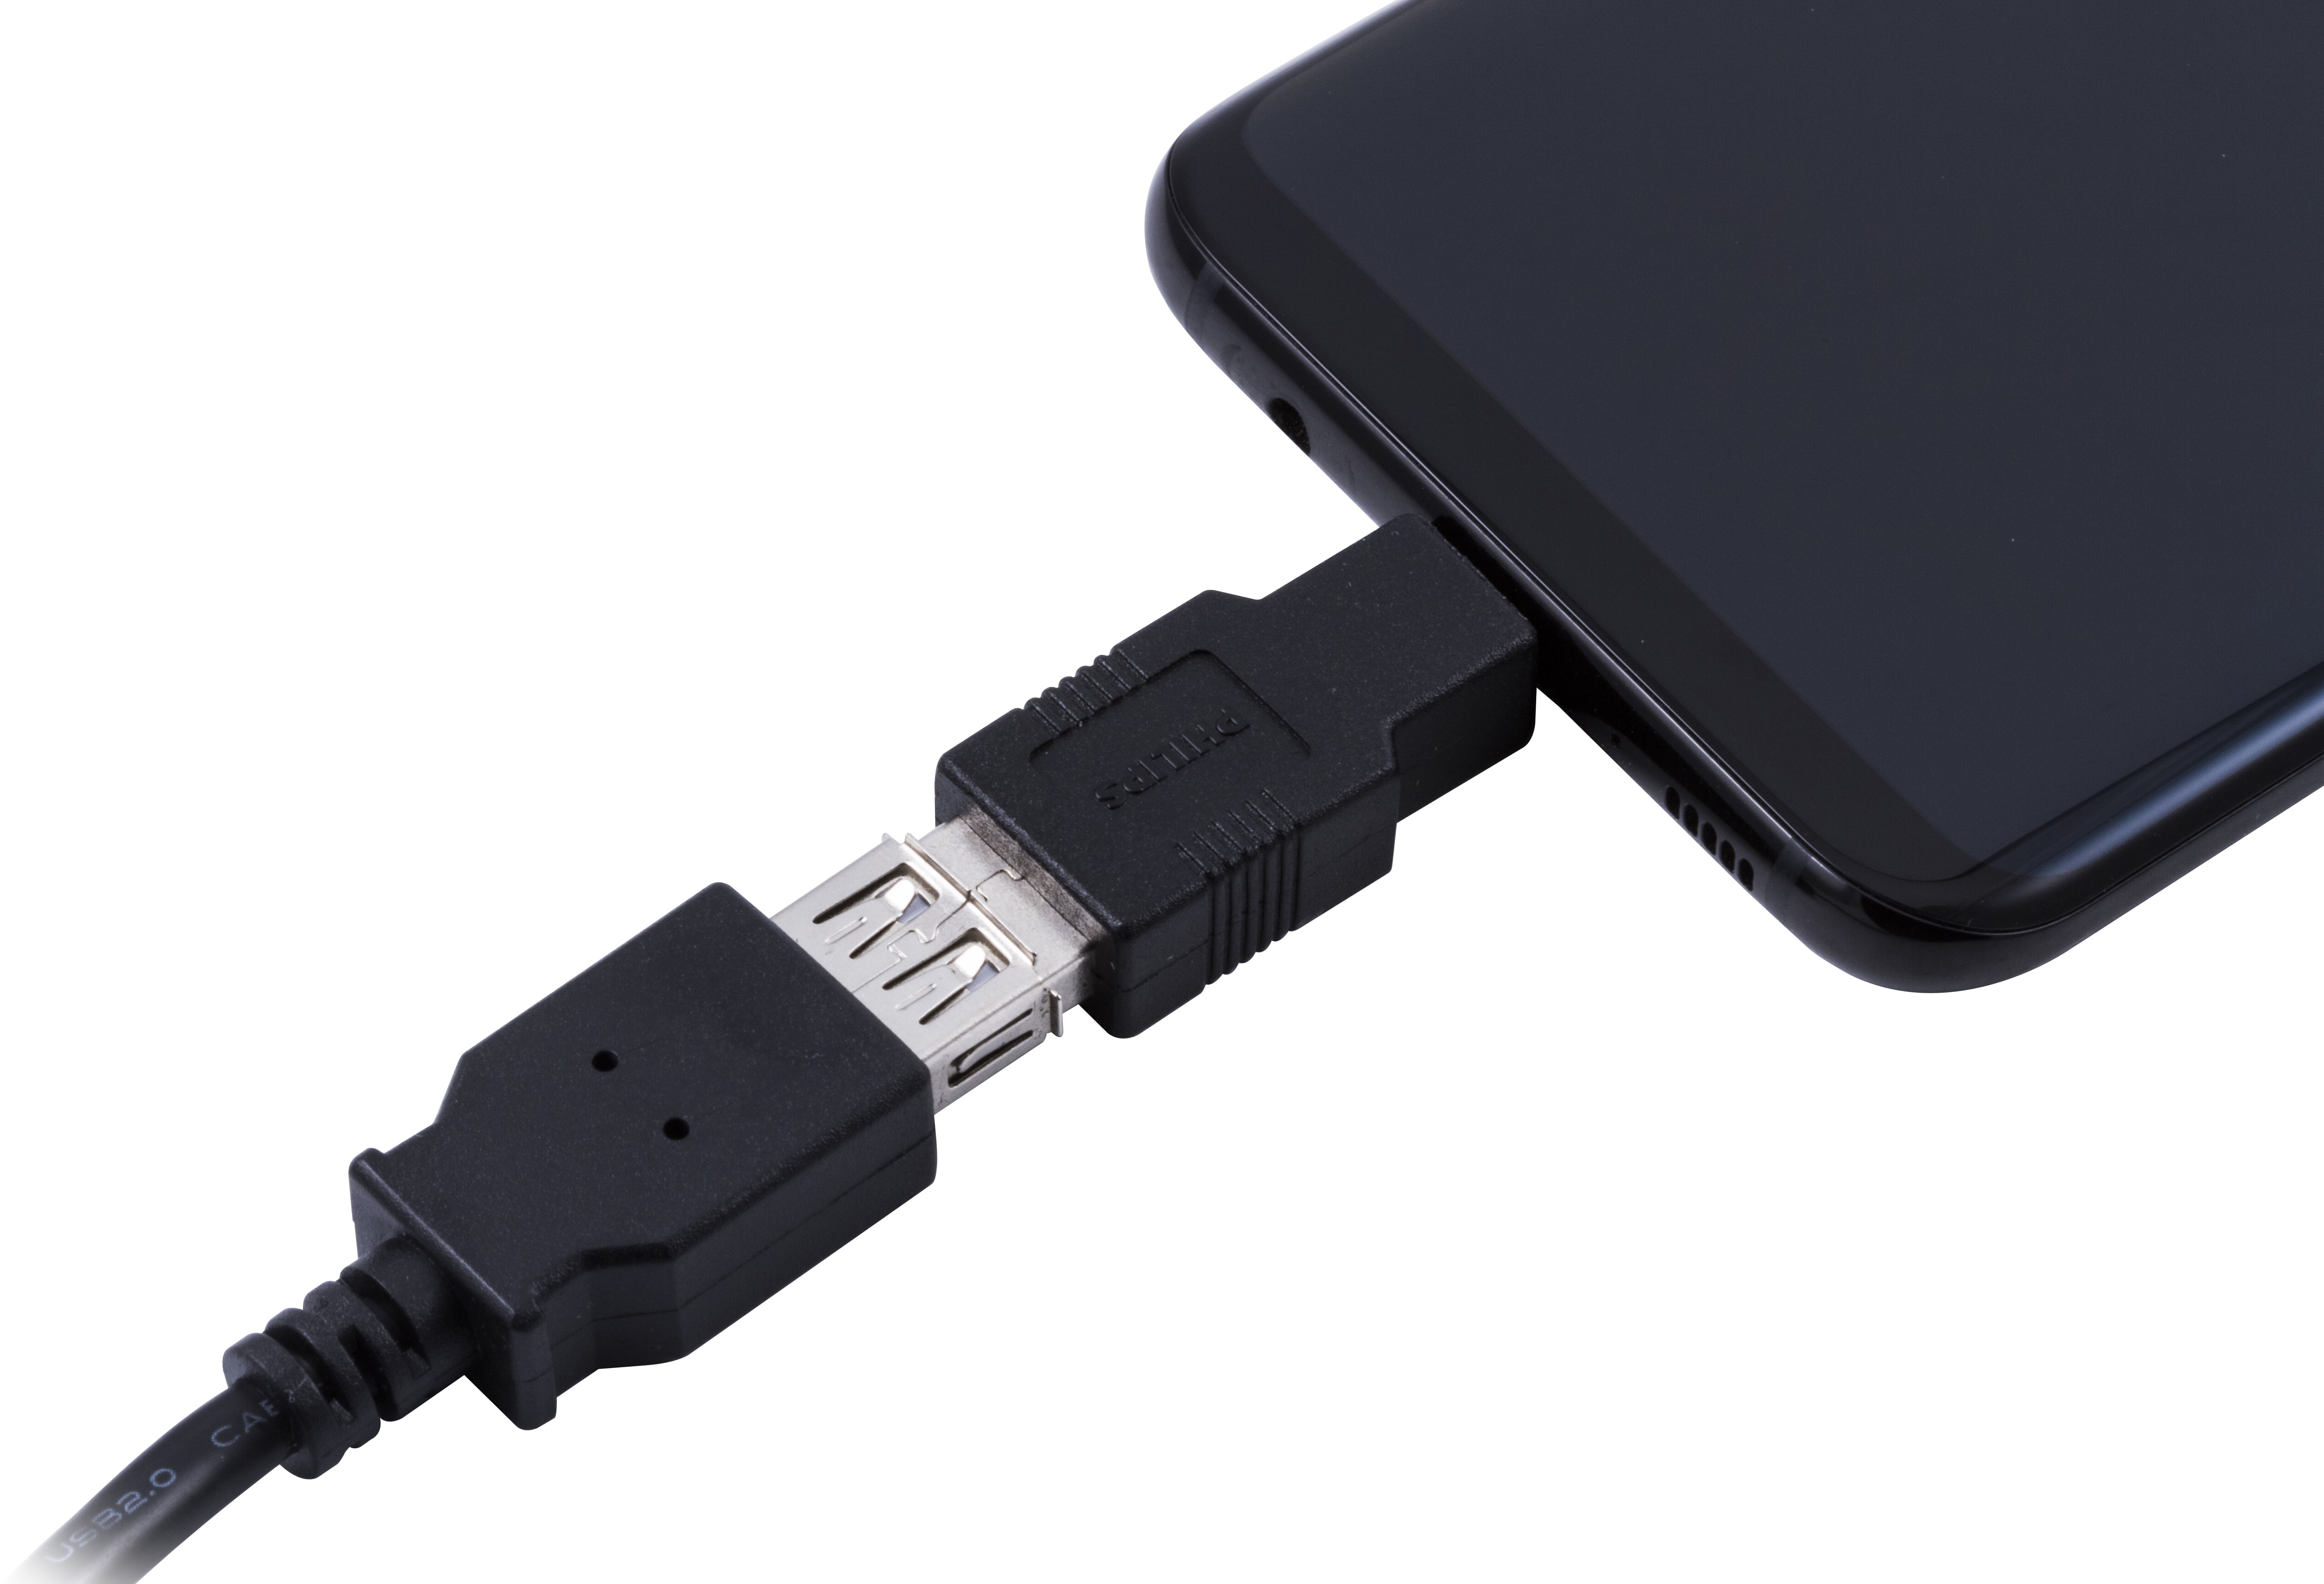 Clé USB 2-en-1 3.1 USB-C Philips Midnight Black 64Go sur